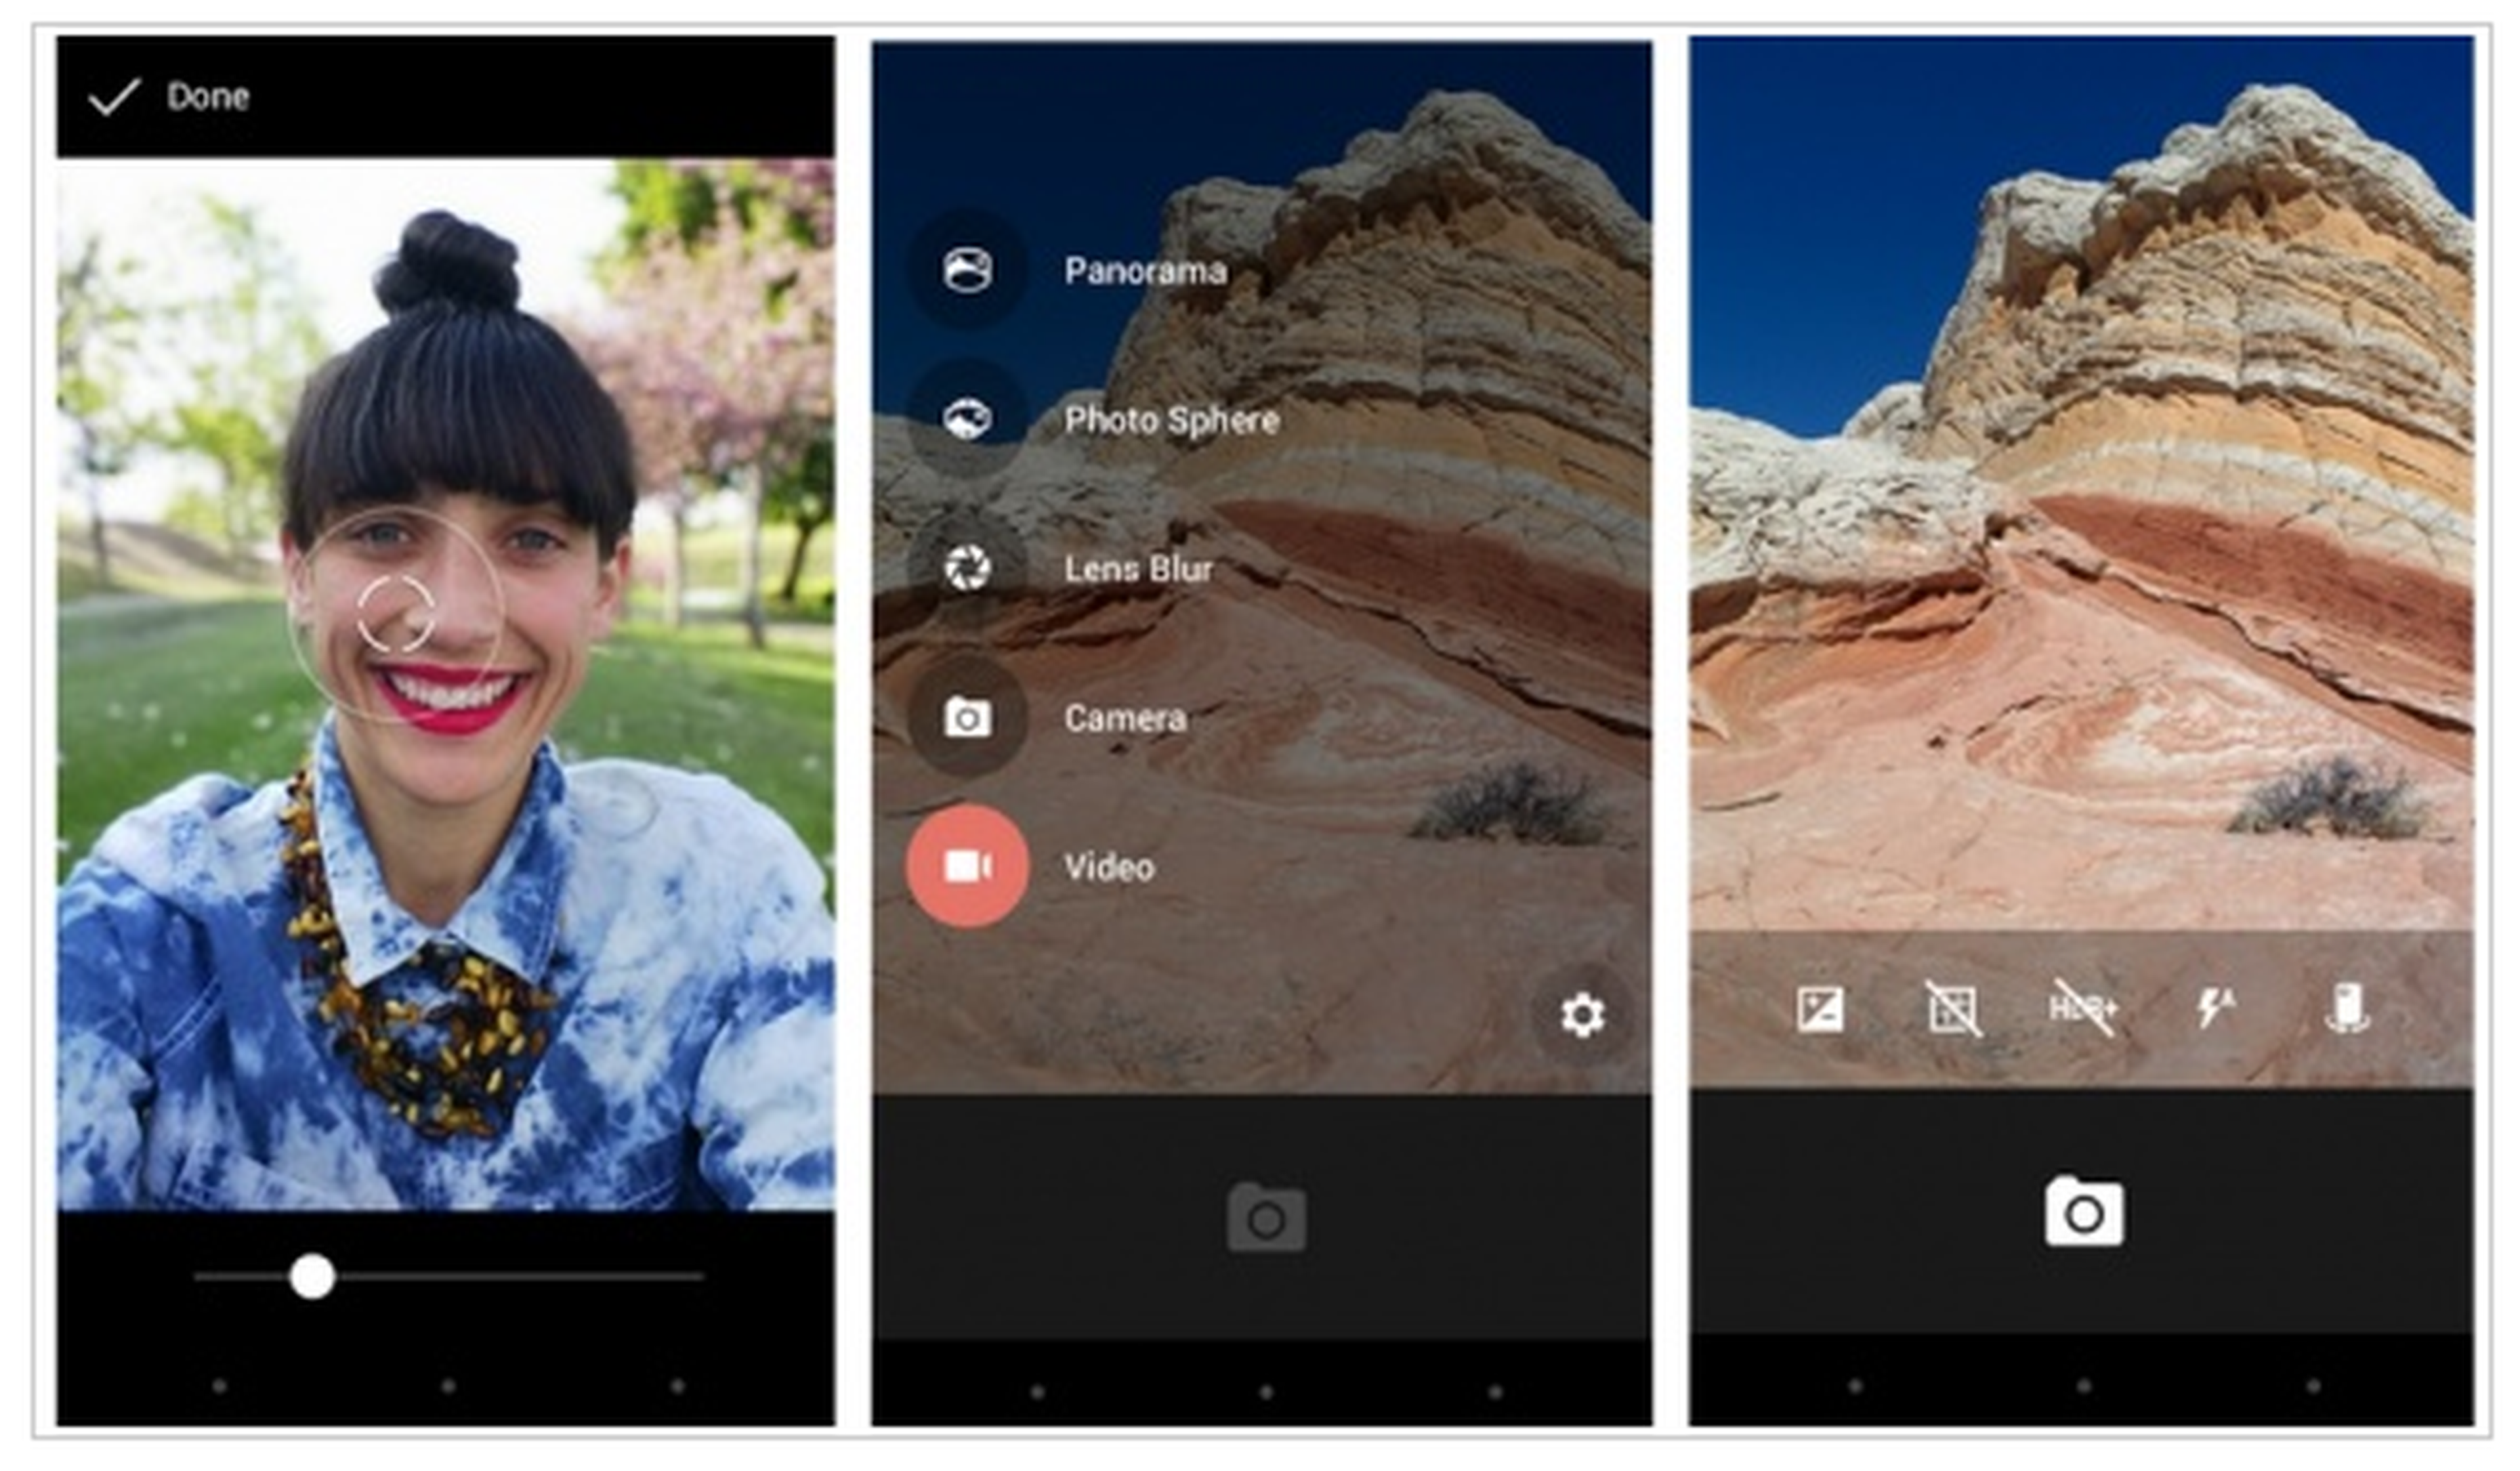 Hacer fotos mientras se graba vídeo ya es posible en Android